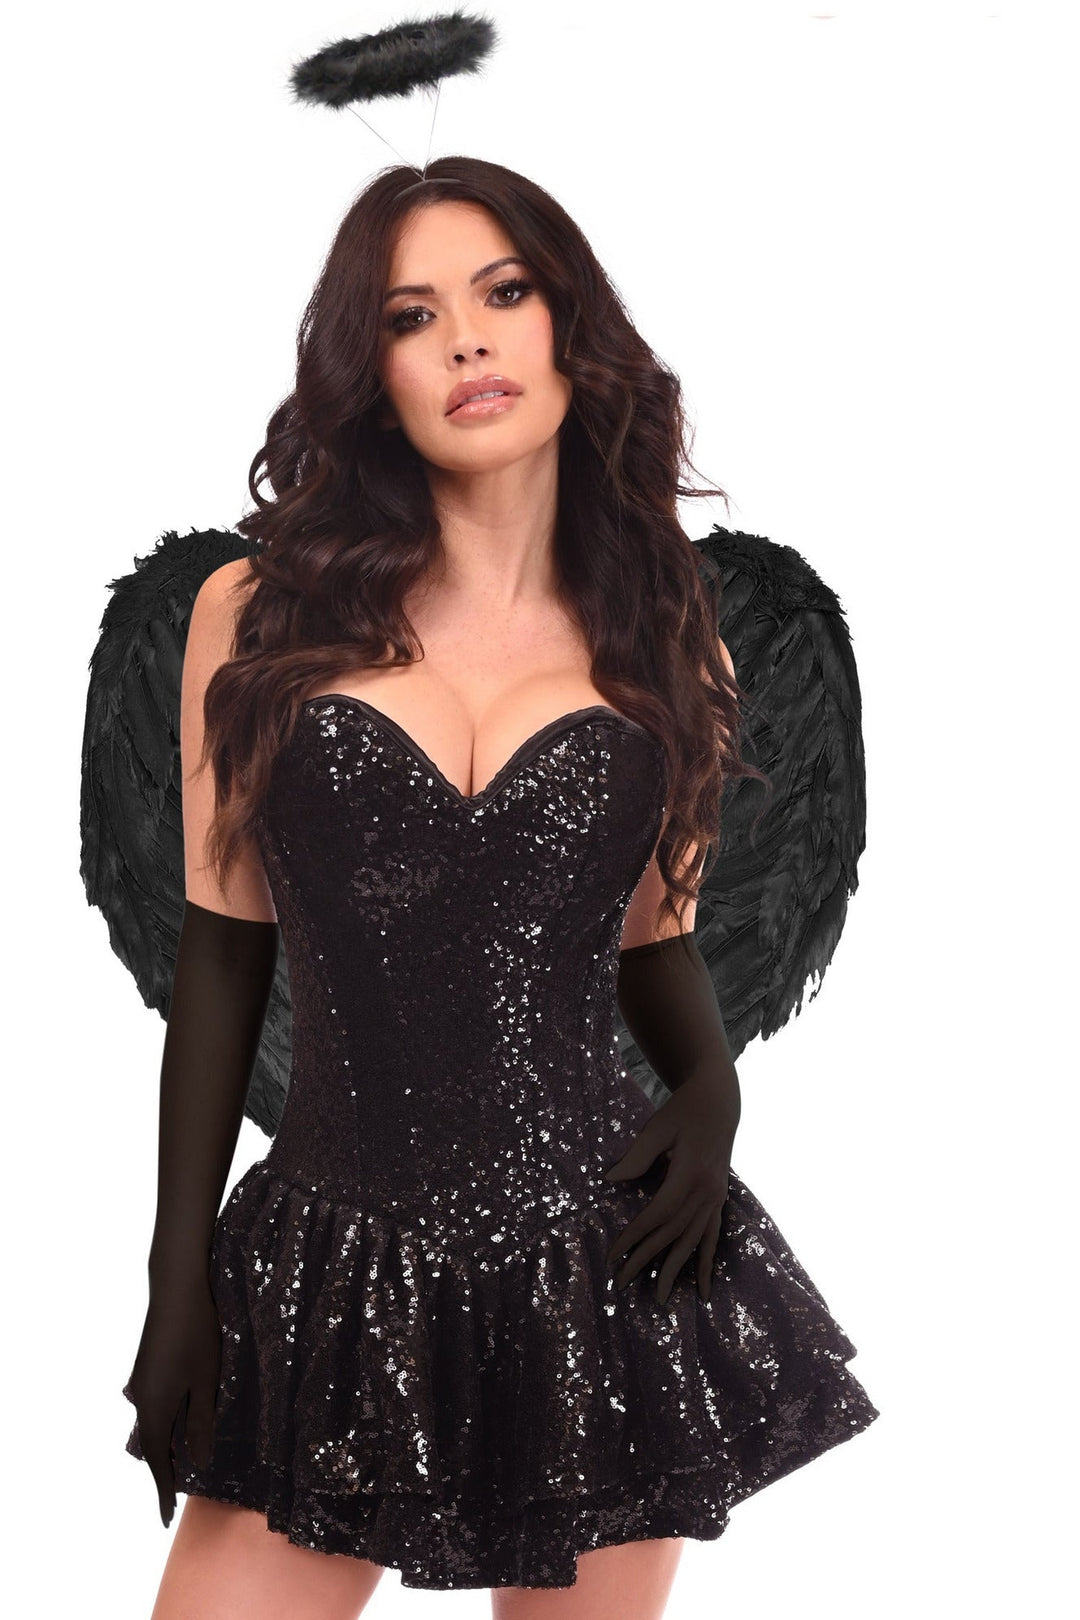 Top Drawer 4 PC Sequin Dark Angel Corset Dress Costume